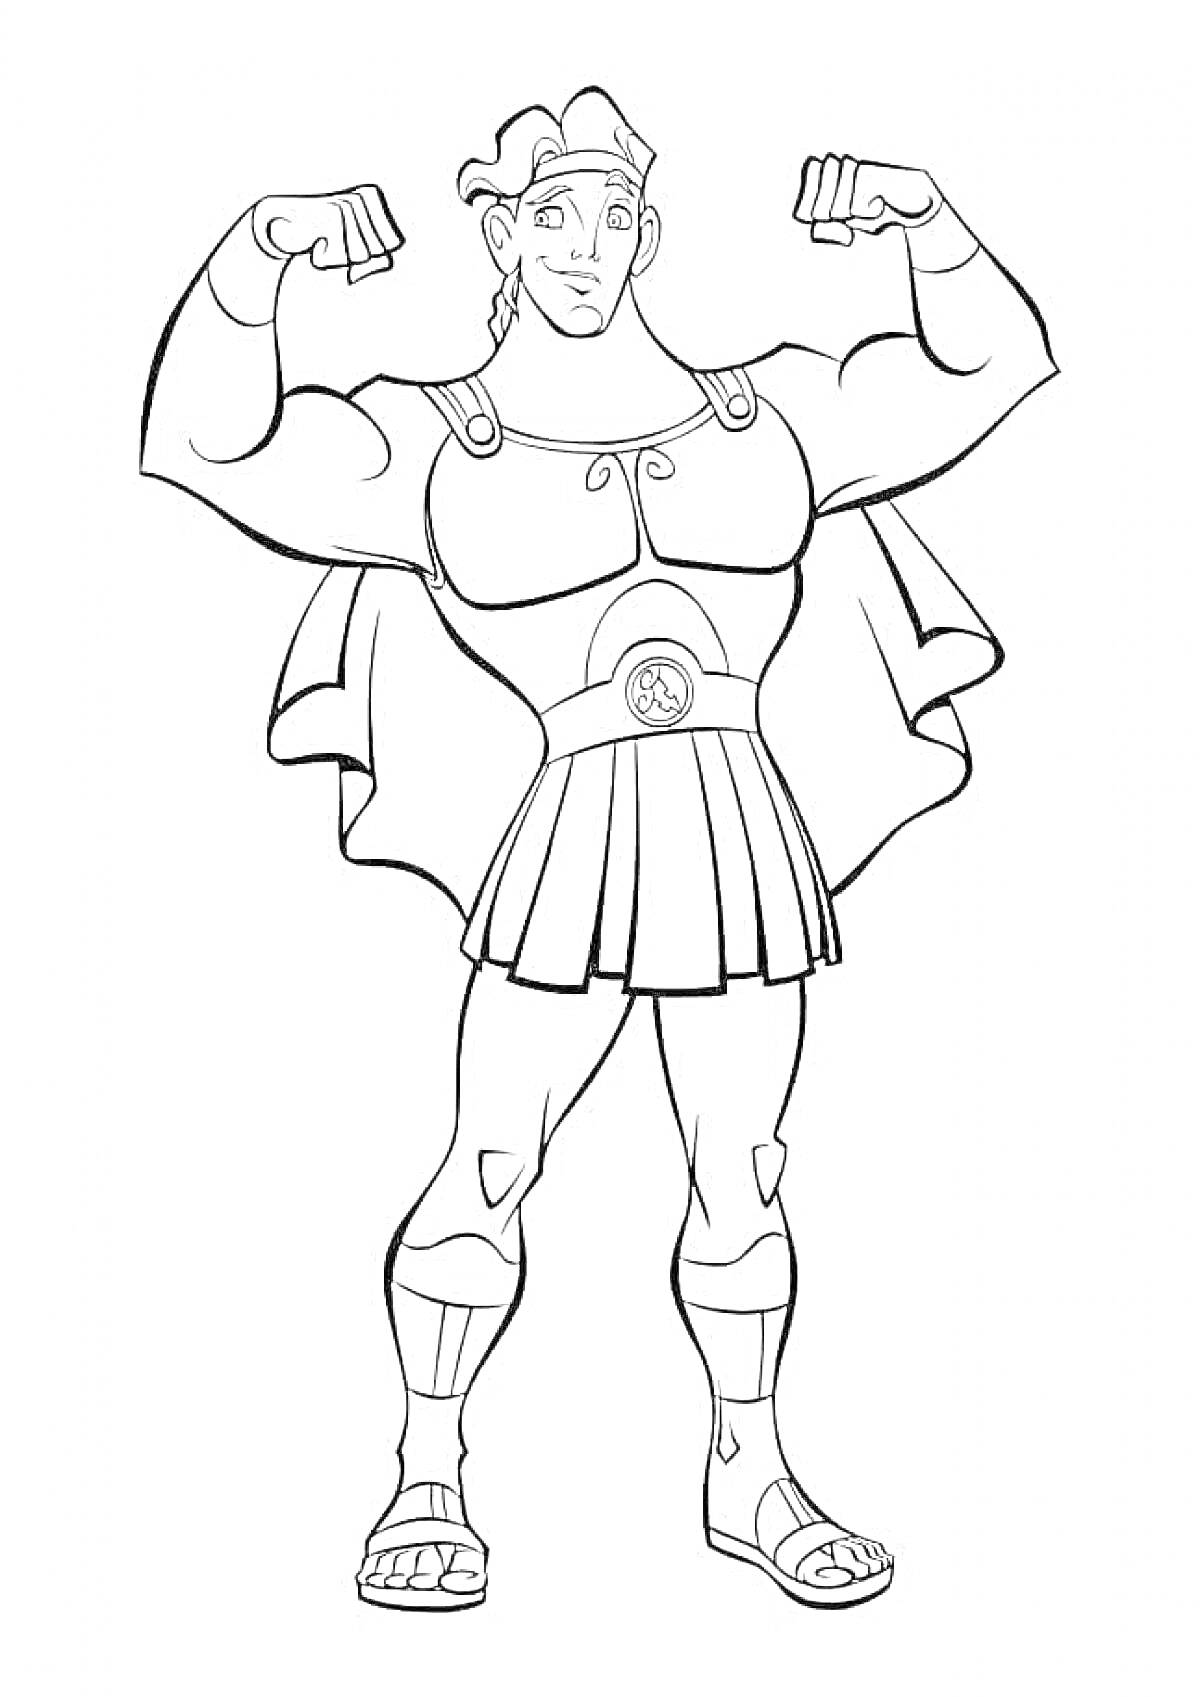 Раскраска Геракл в шлеме и доспехах, демонстрирующий силу, с поднятыми руками и в сандалиях